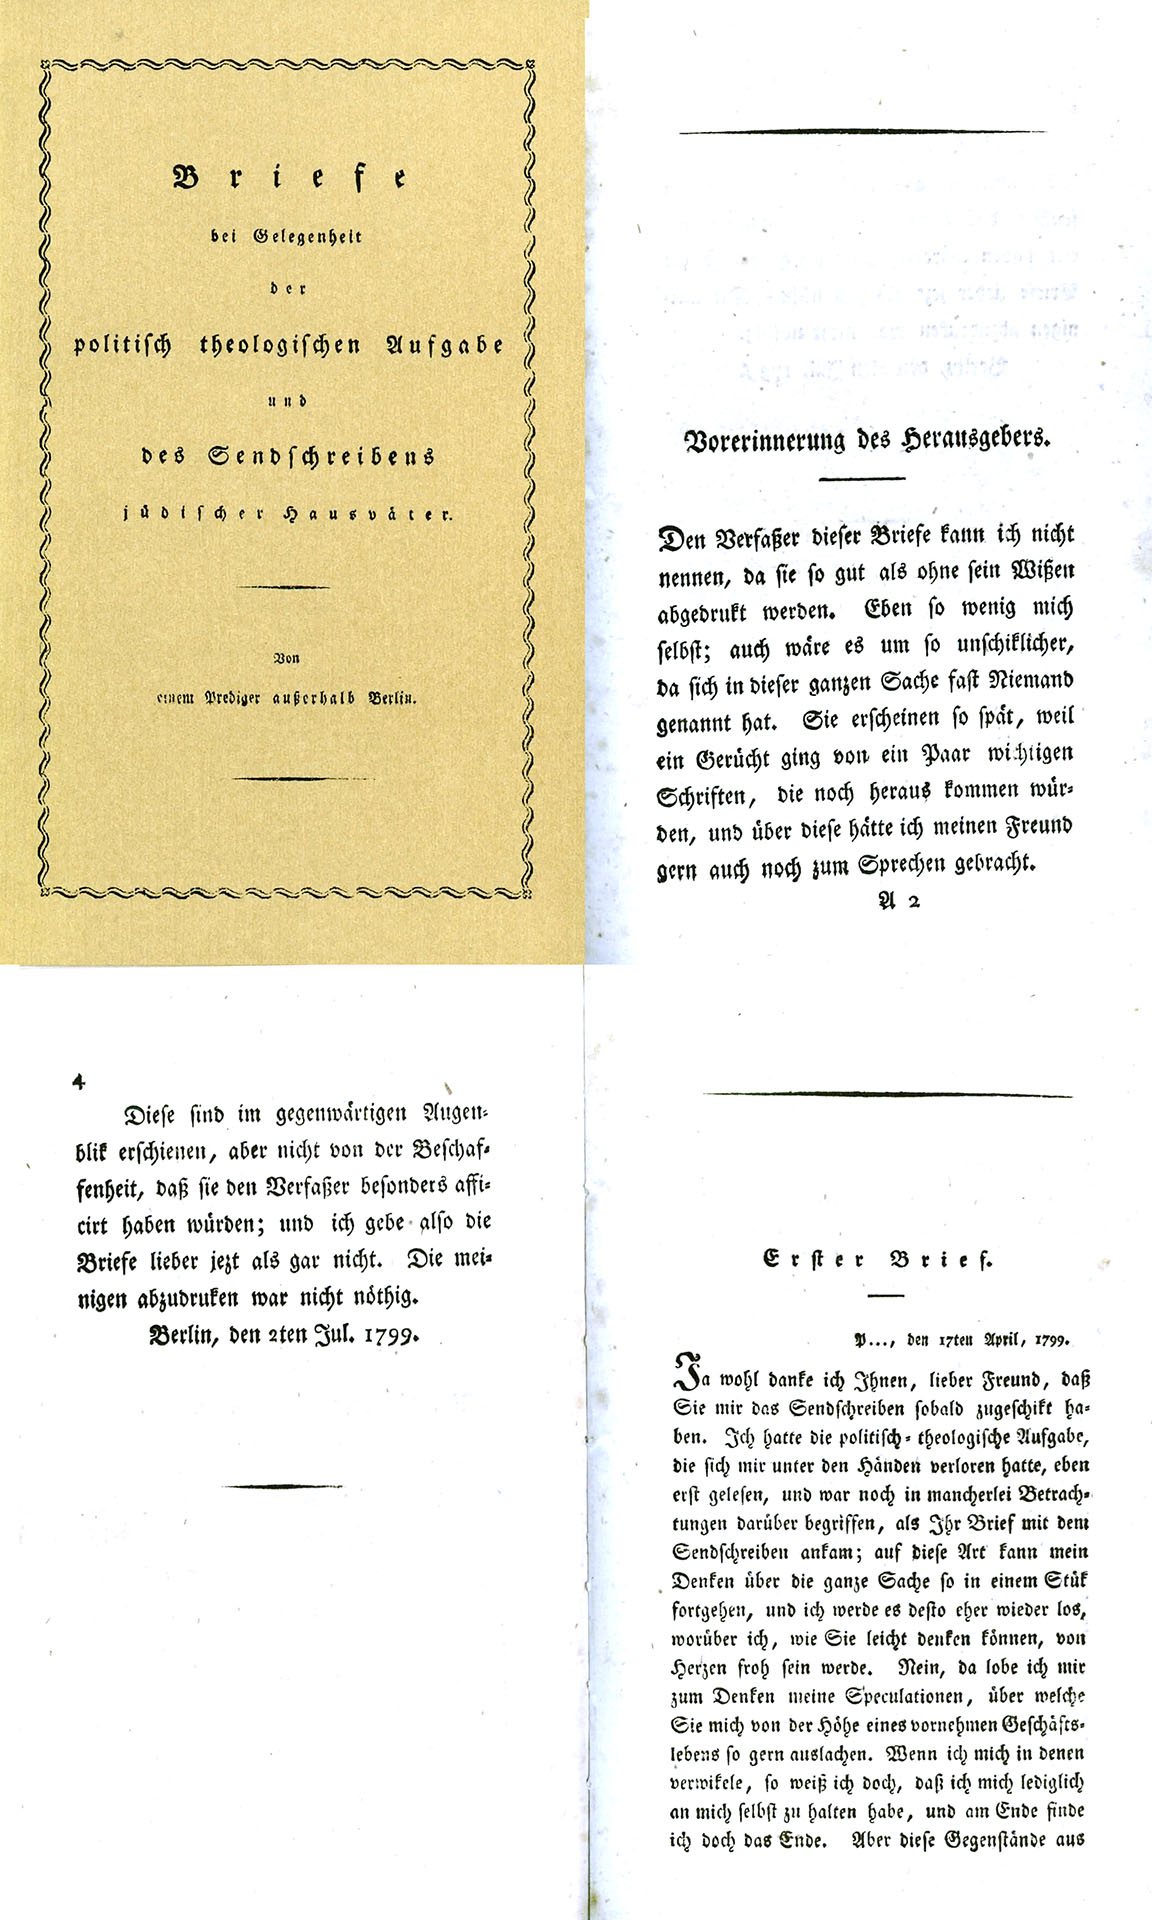 Briefe 1799 - Schleiermacher, Friedrich